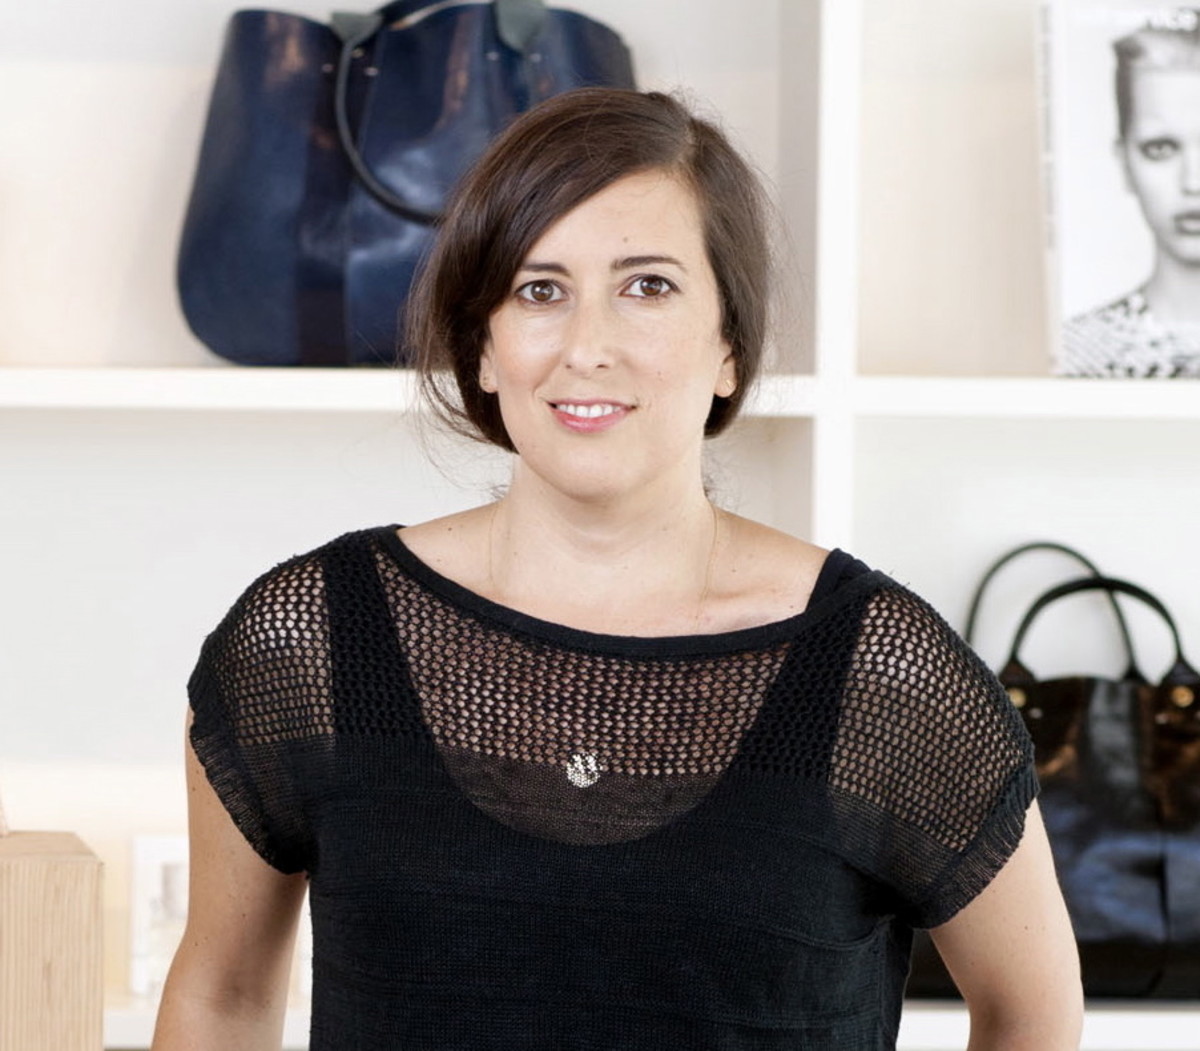 Inside The LA Home Of Accessories Designer Clare Vivier